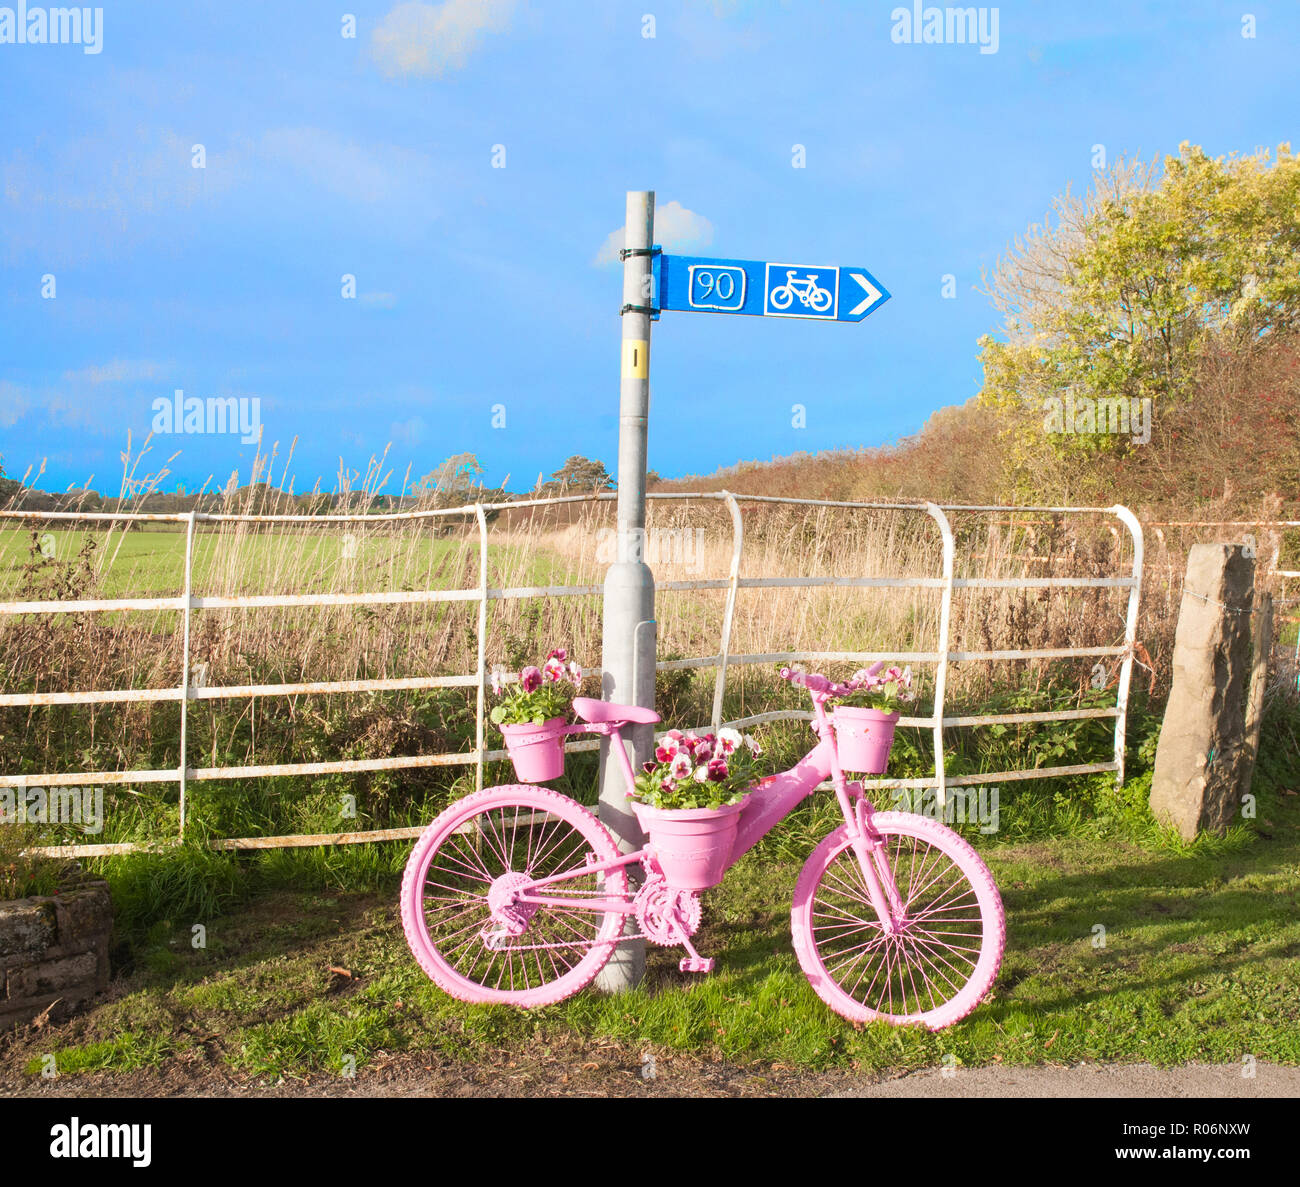 Fahrrad am Straßenrand lackiert rosa mit blume Anzeige der Rosa rote und weiße Stiefmütterchen. Elswick Dorf Lancashire England Großbritannien Stockfoto